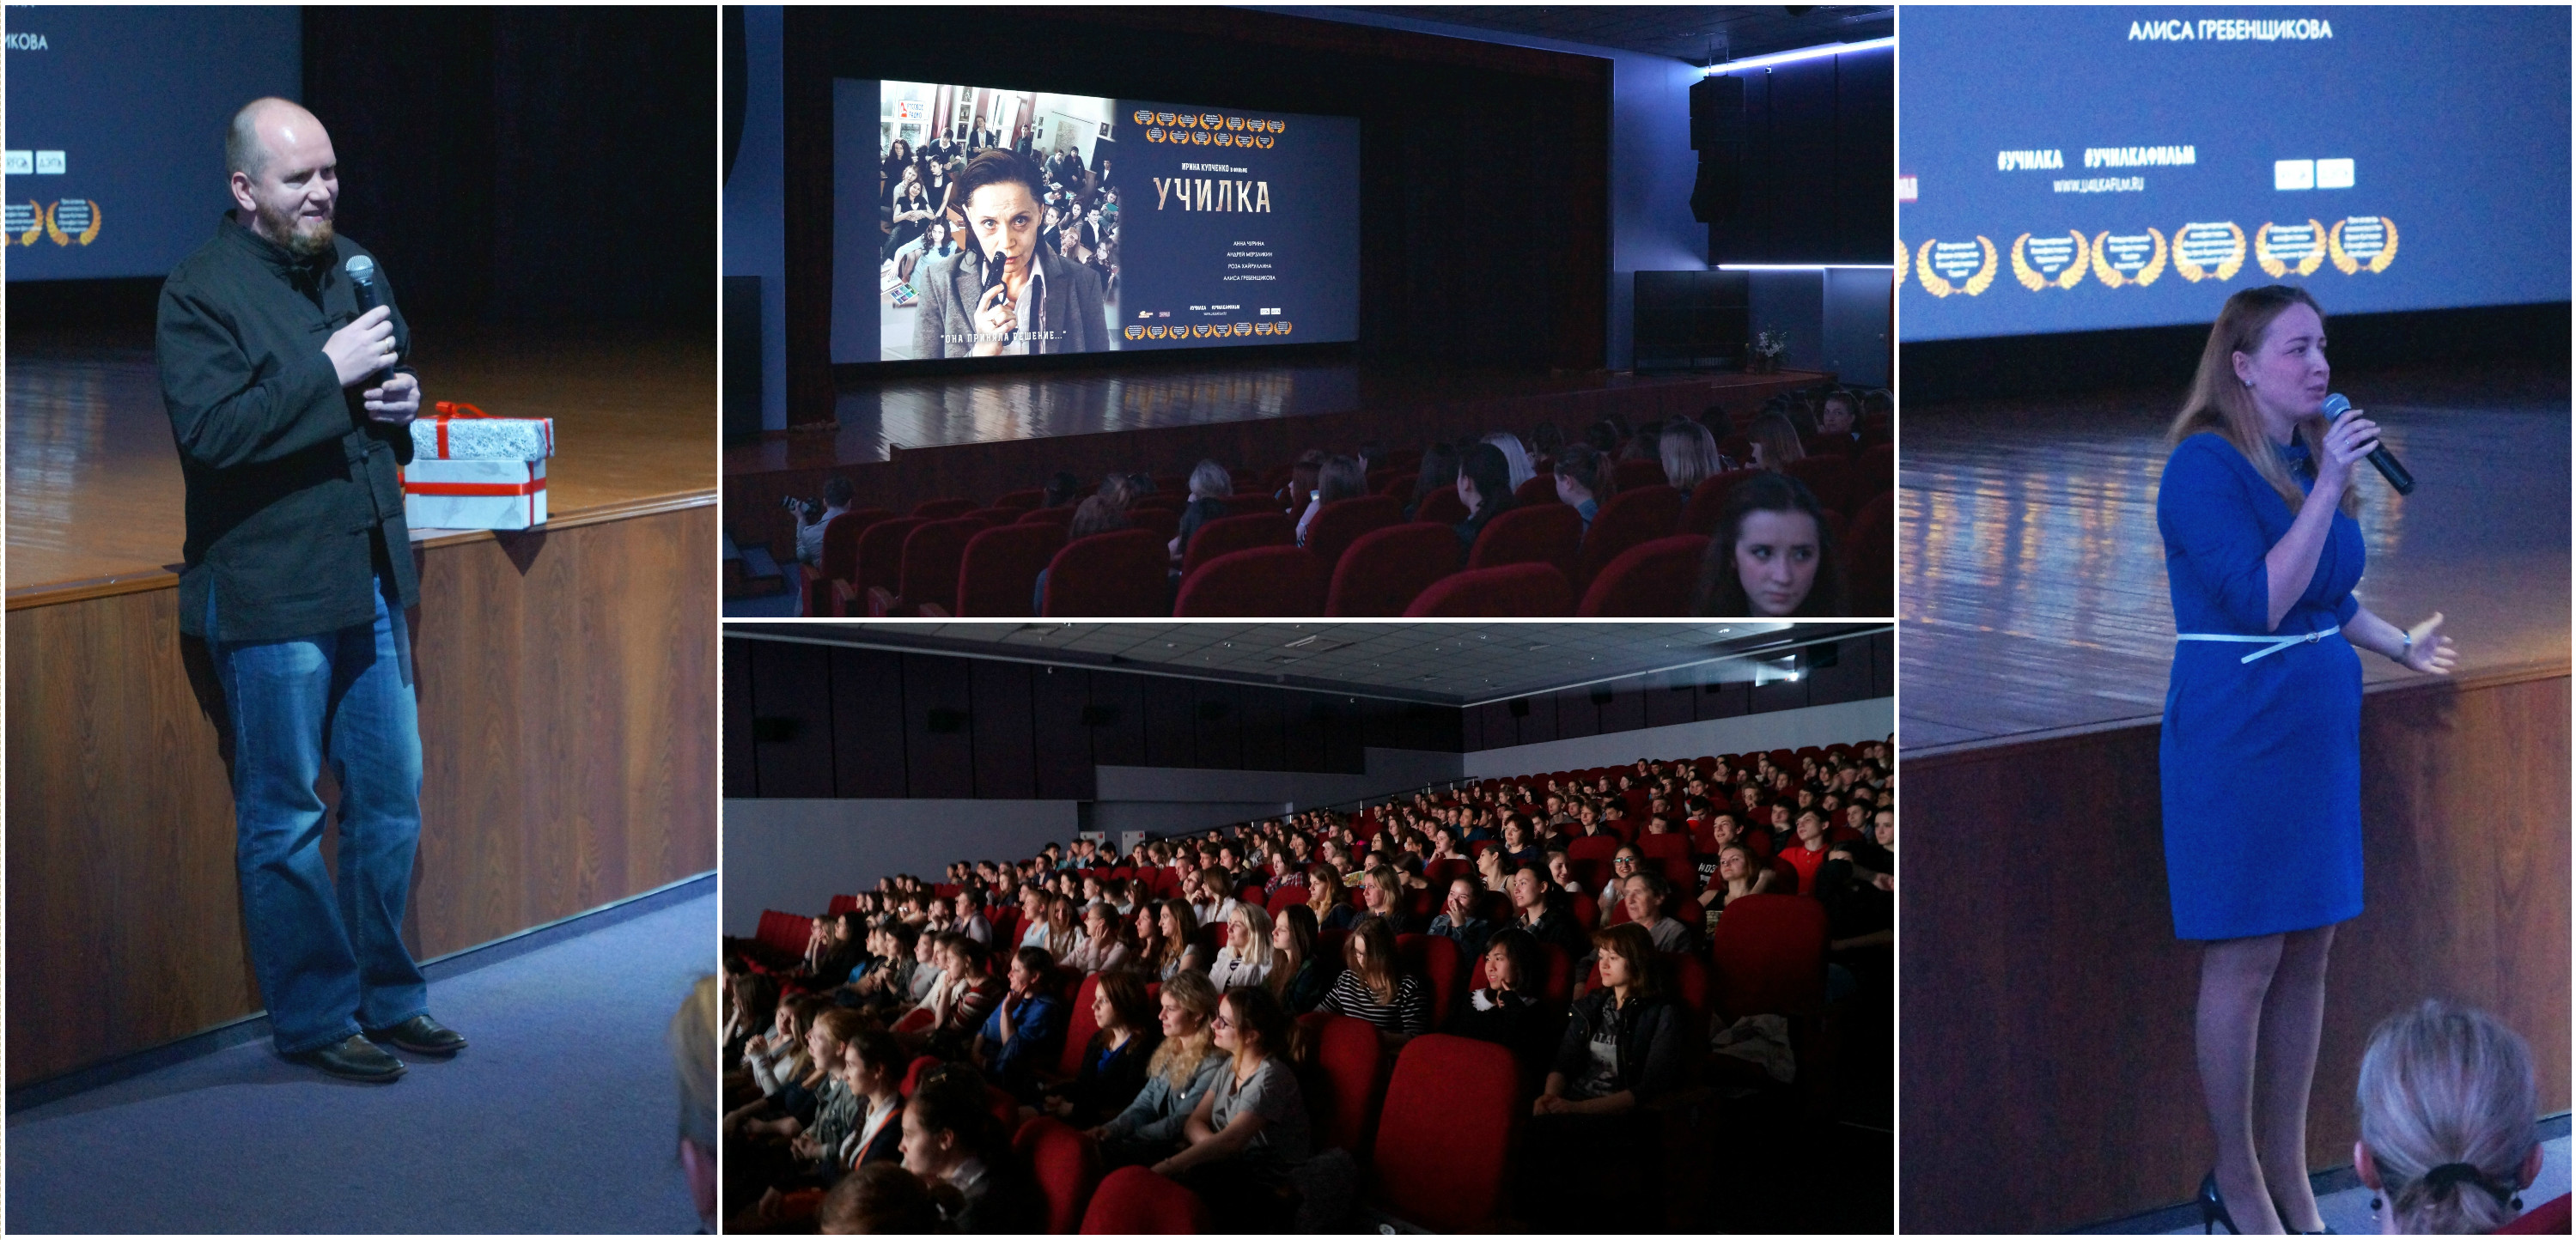 24 мая 2016 - Творческая встреча с режиссером Алексеем Петрухиным и бесплатный показ фильма «Училка».